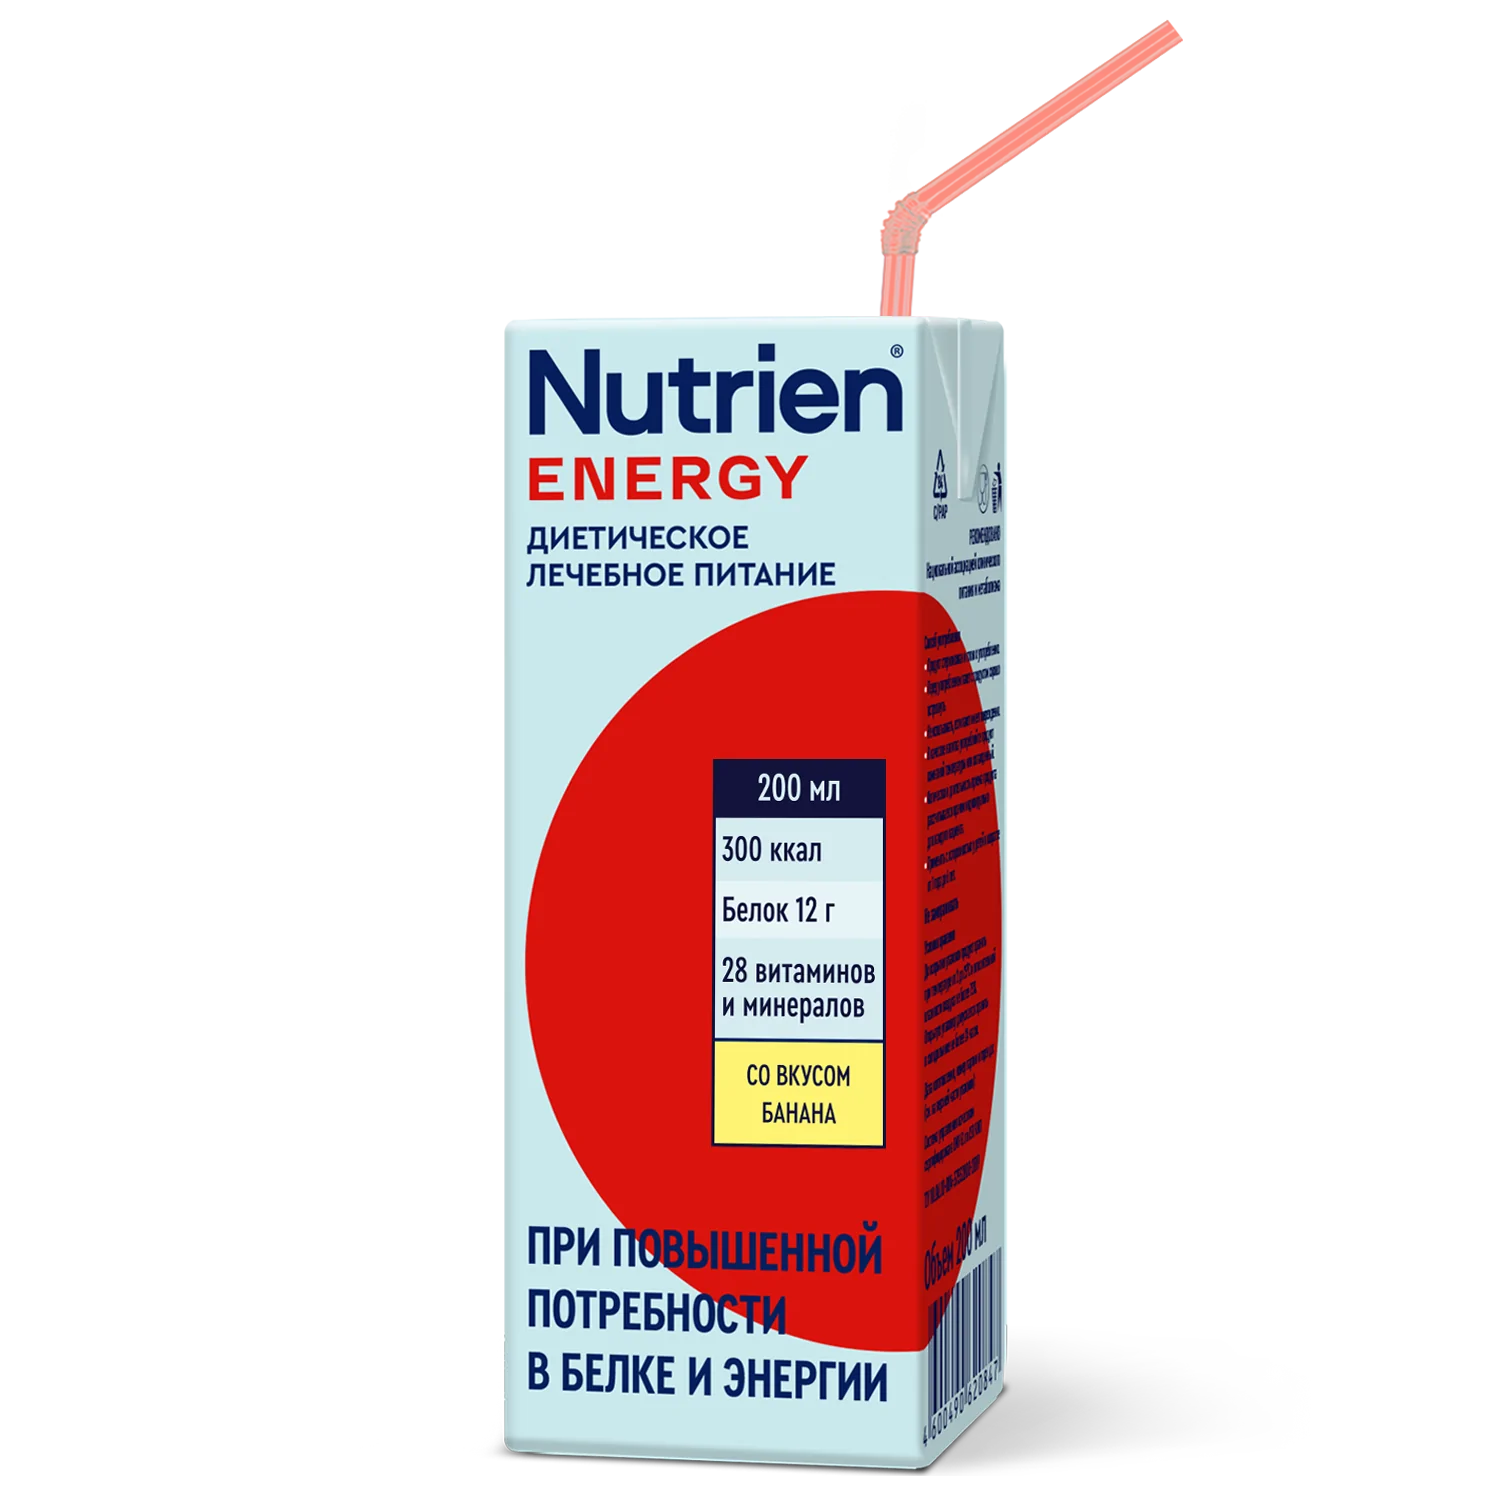 Nutrien Energy